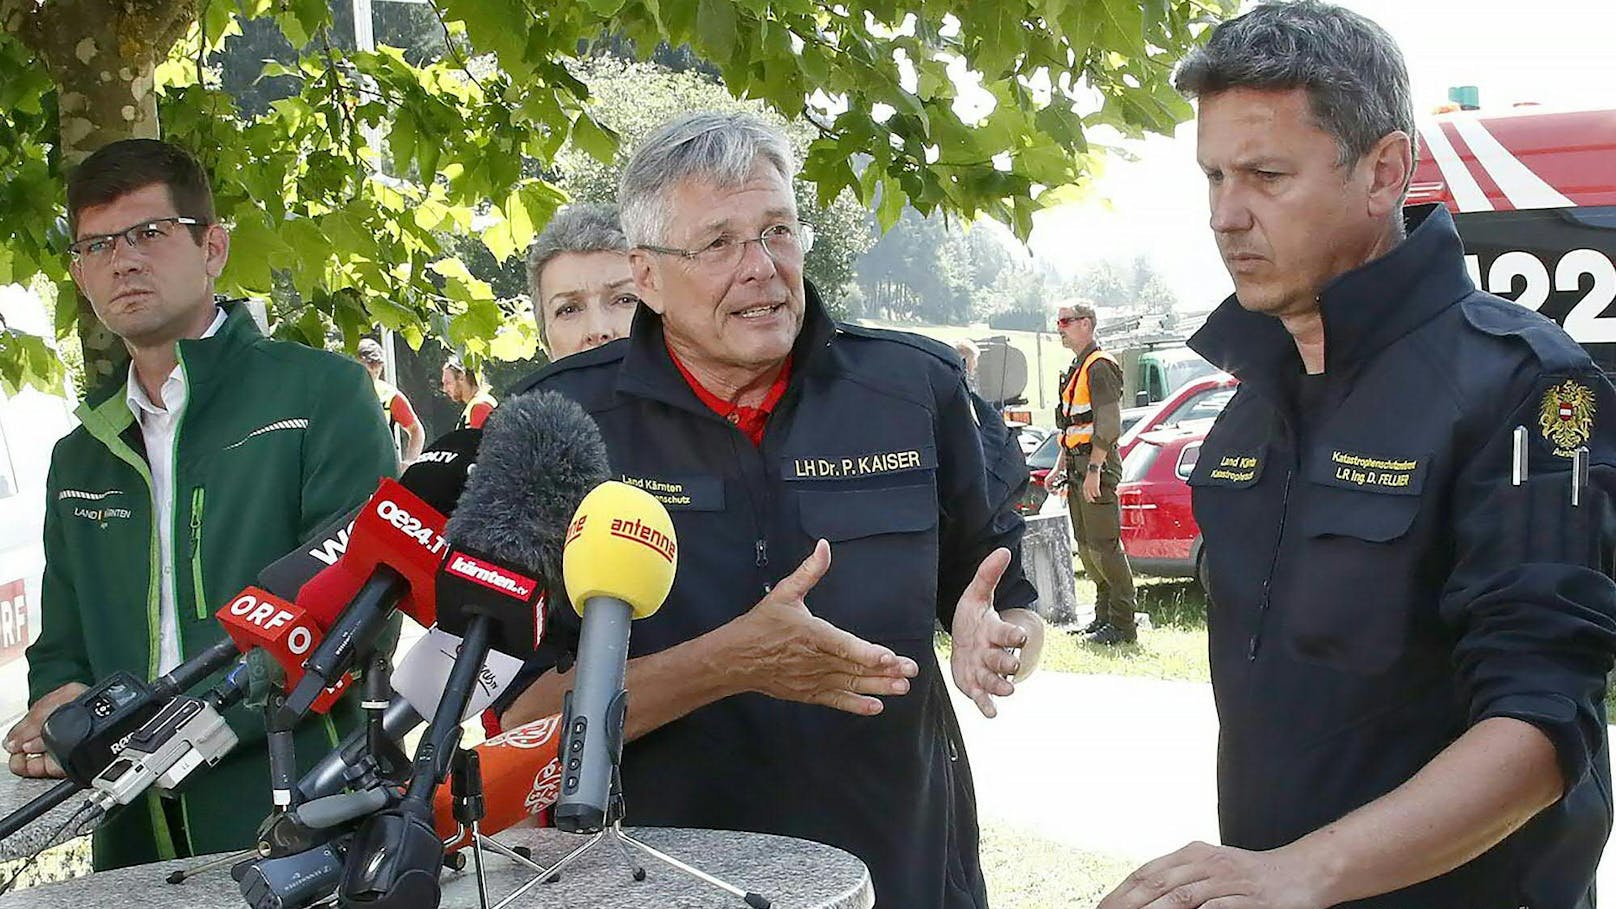 Landeshauptmann Peter Kaiser (m.) und Katastrophenschutzreferent Daniel Fellner (r.) während einer Pressekonferenz in Folge eines Unwetter-Ereignisses am 30. Juni 2022. Archivbild.